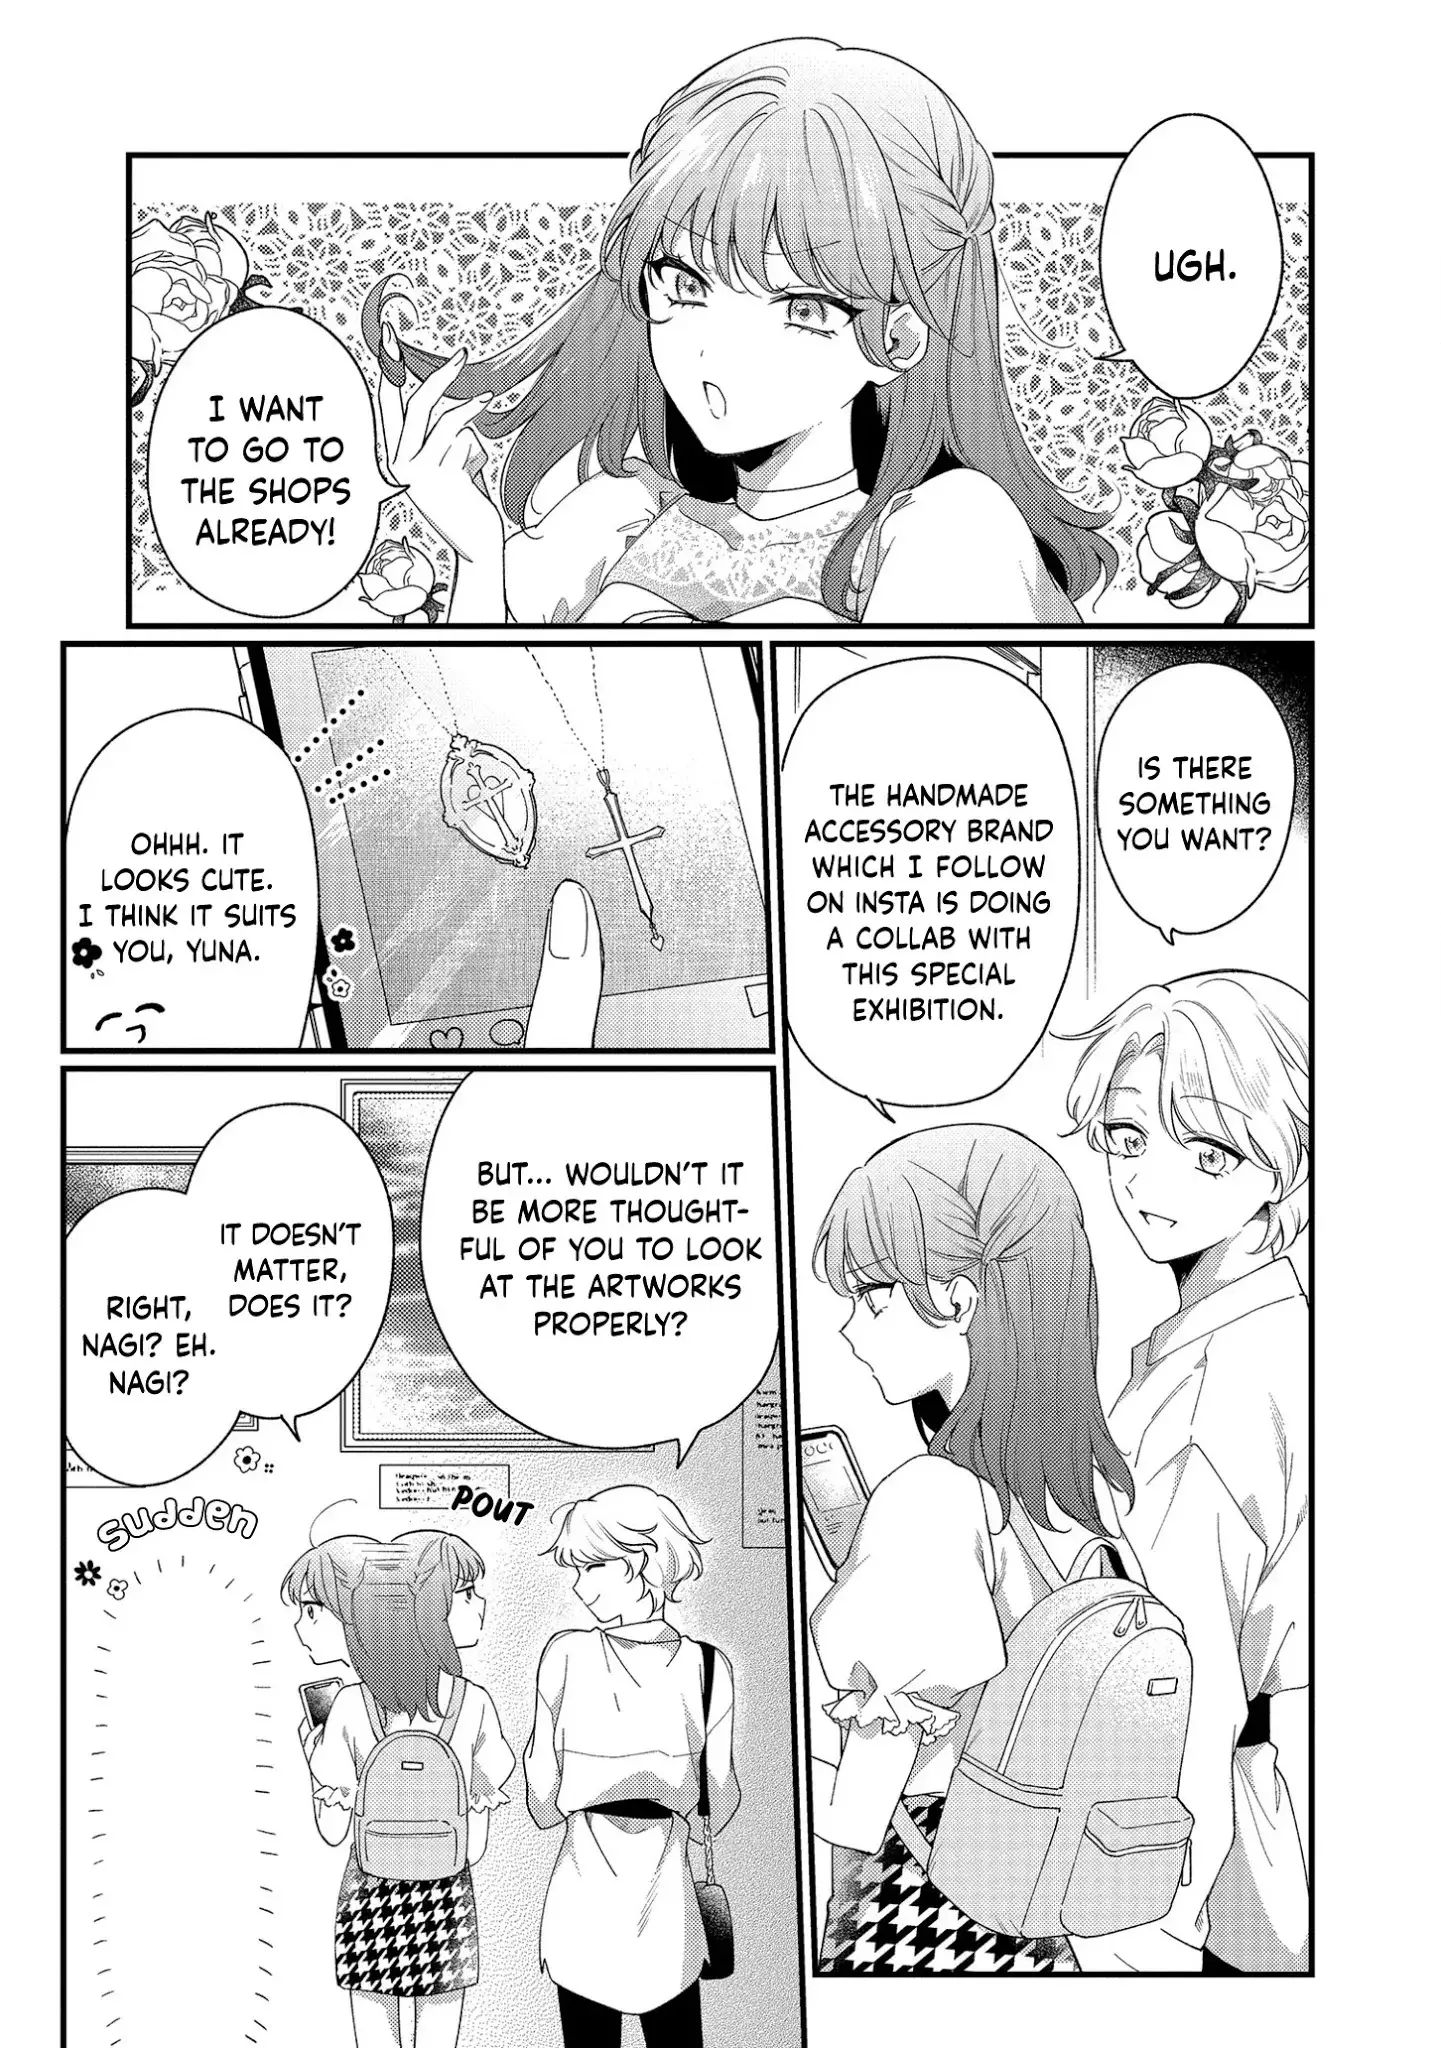 No Match For Aoi-Kun - 3 page 13